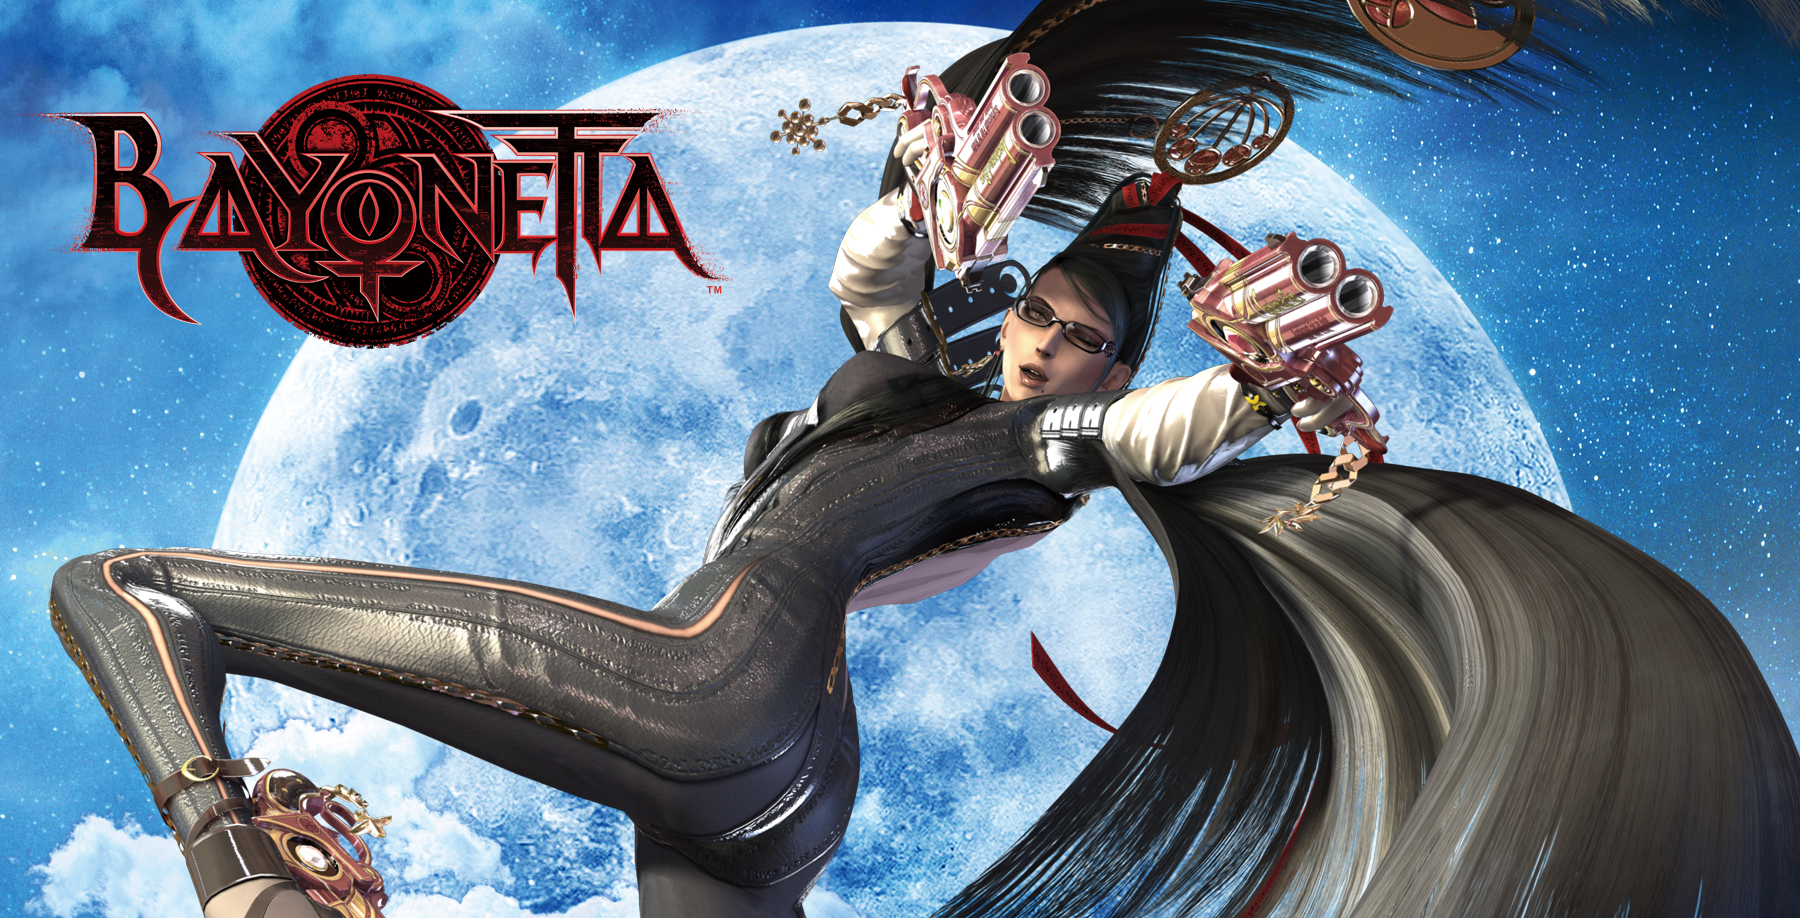 Bayonetta key visual / Key visual from the Bayonetta game page at platinumgames.com. / Image credit: PlatinumGames/SEGA